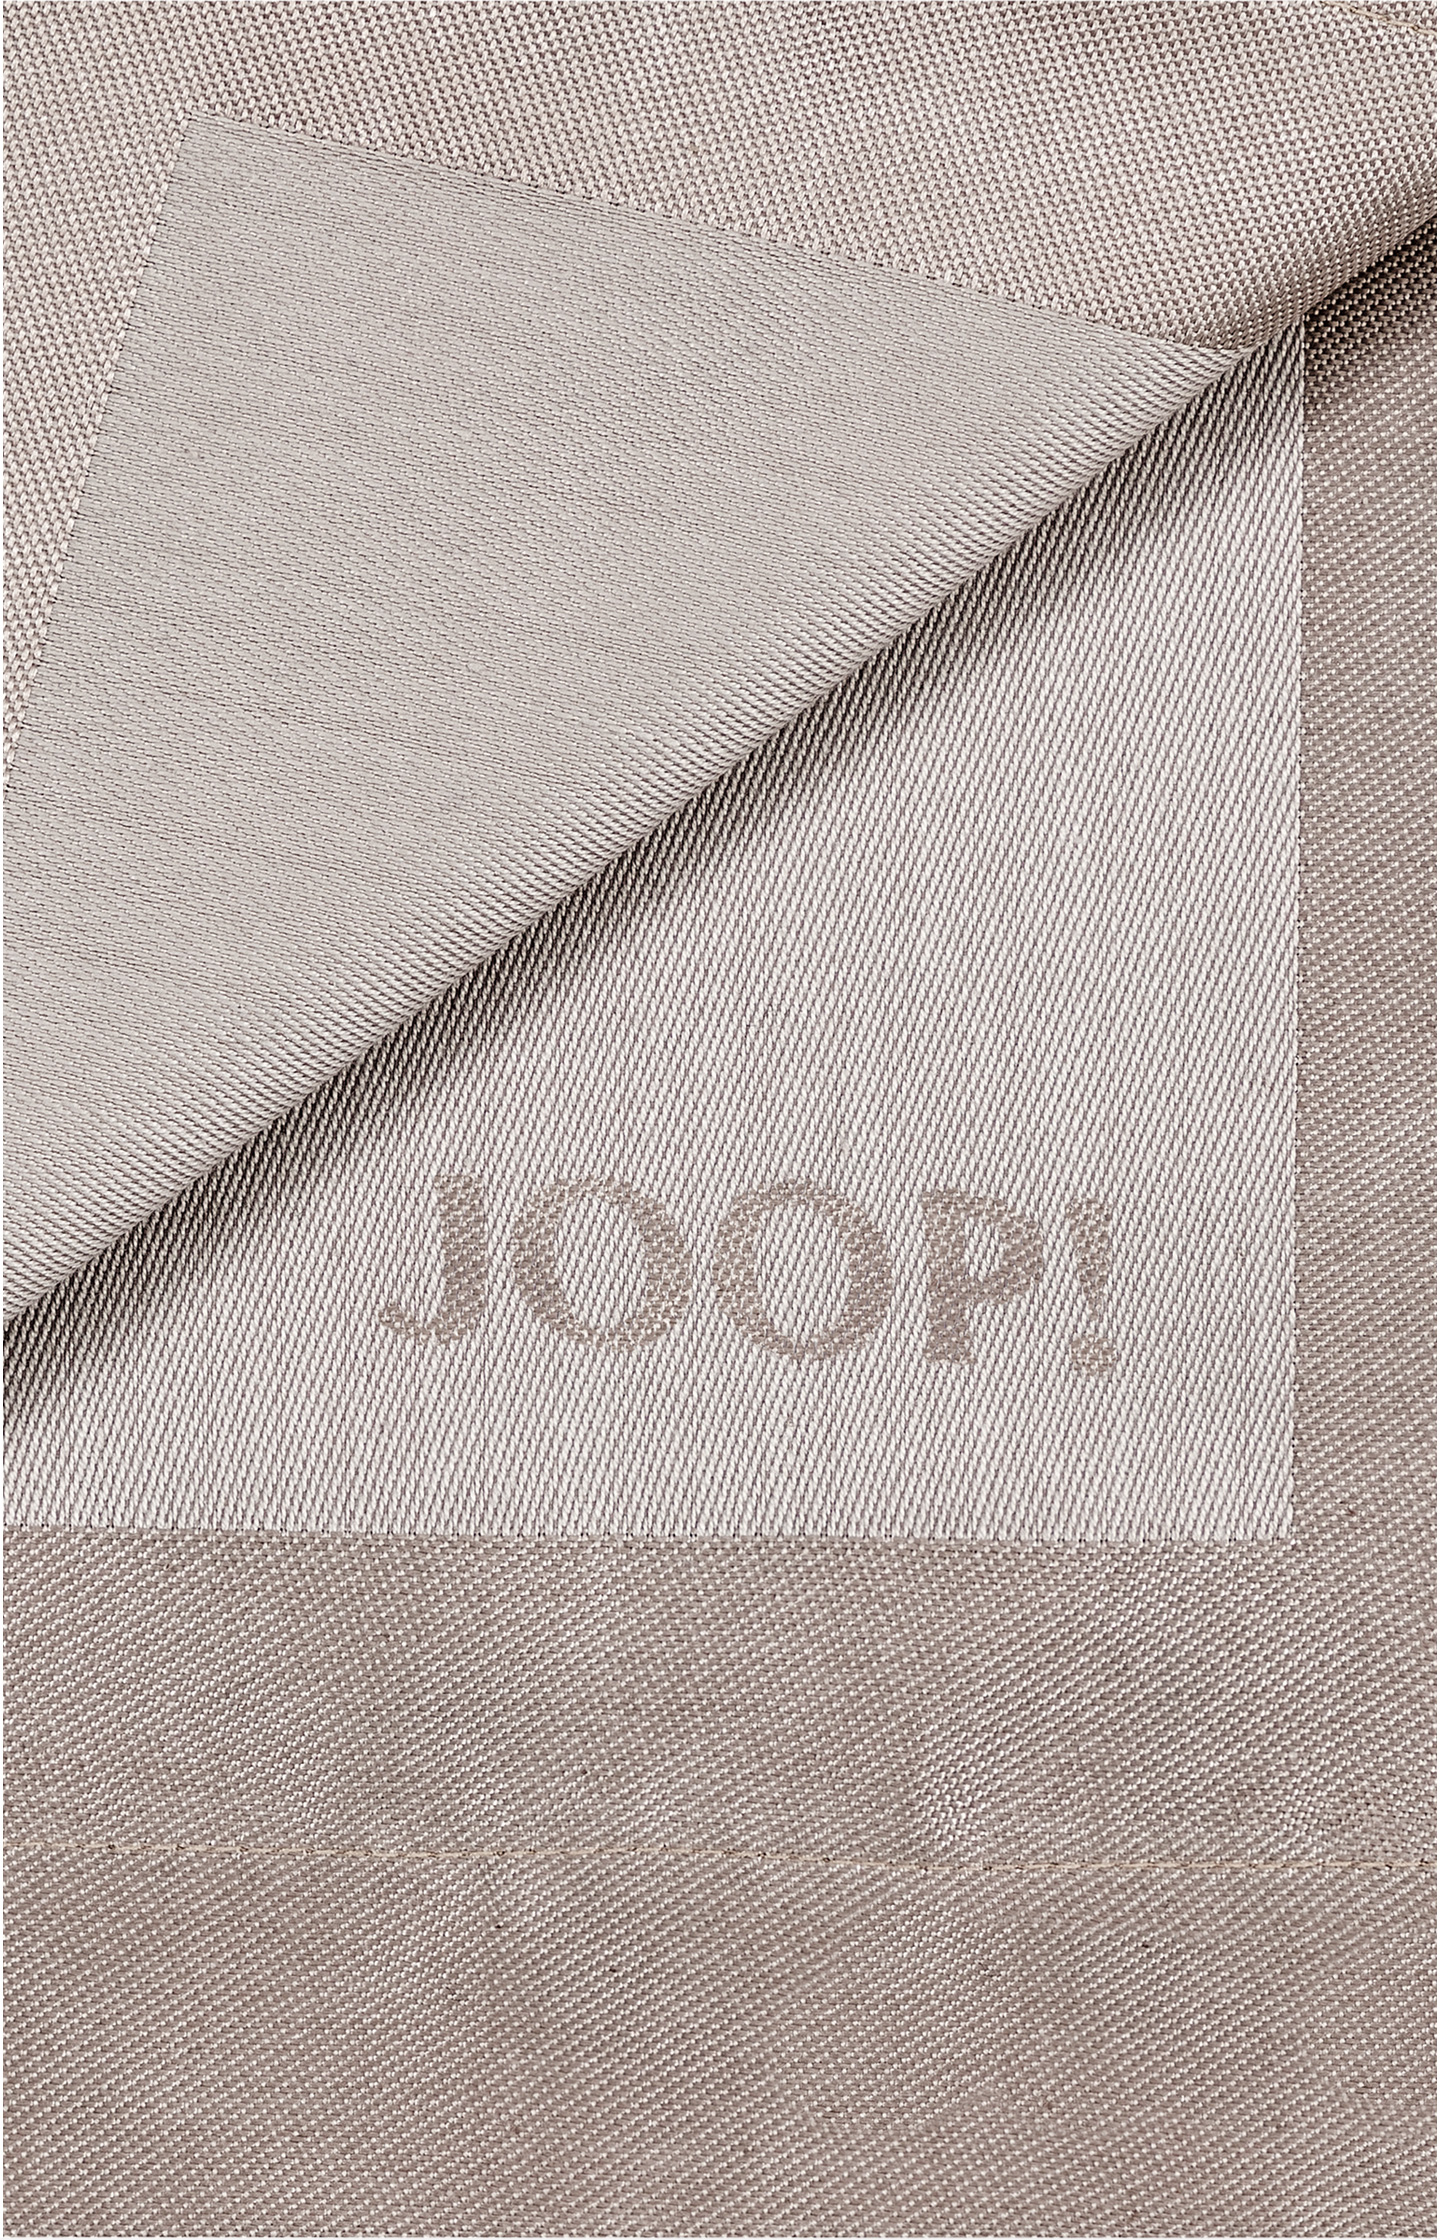 Platzsets JOOP! Signature - 2er Set in Sand, 36 x 48 cm - im JOOP!  Online-Shop